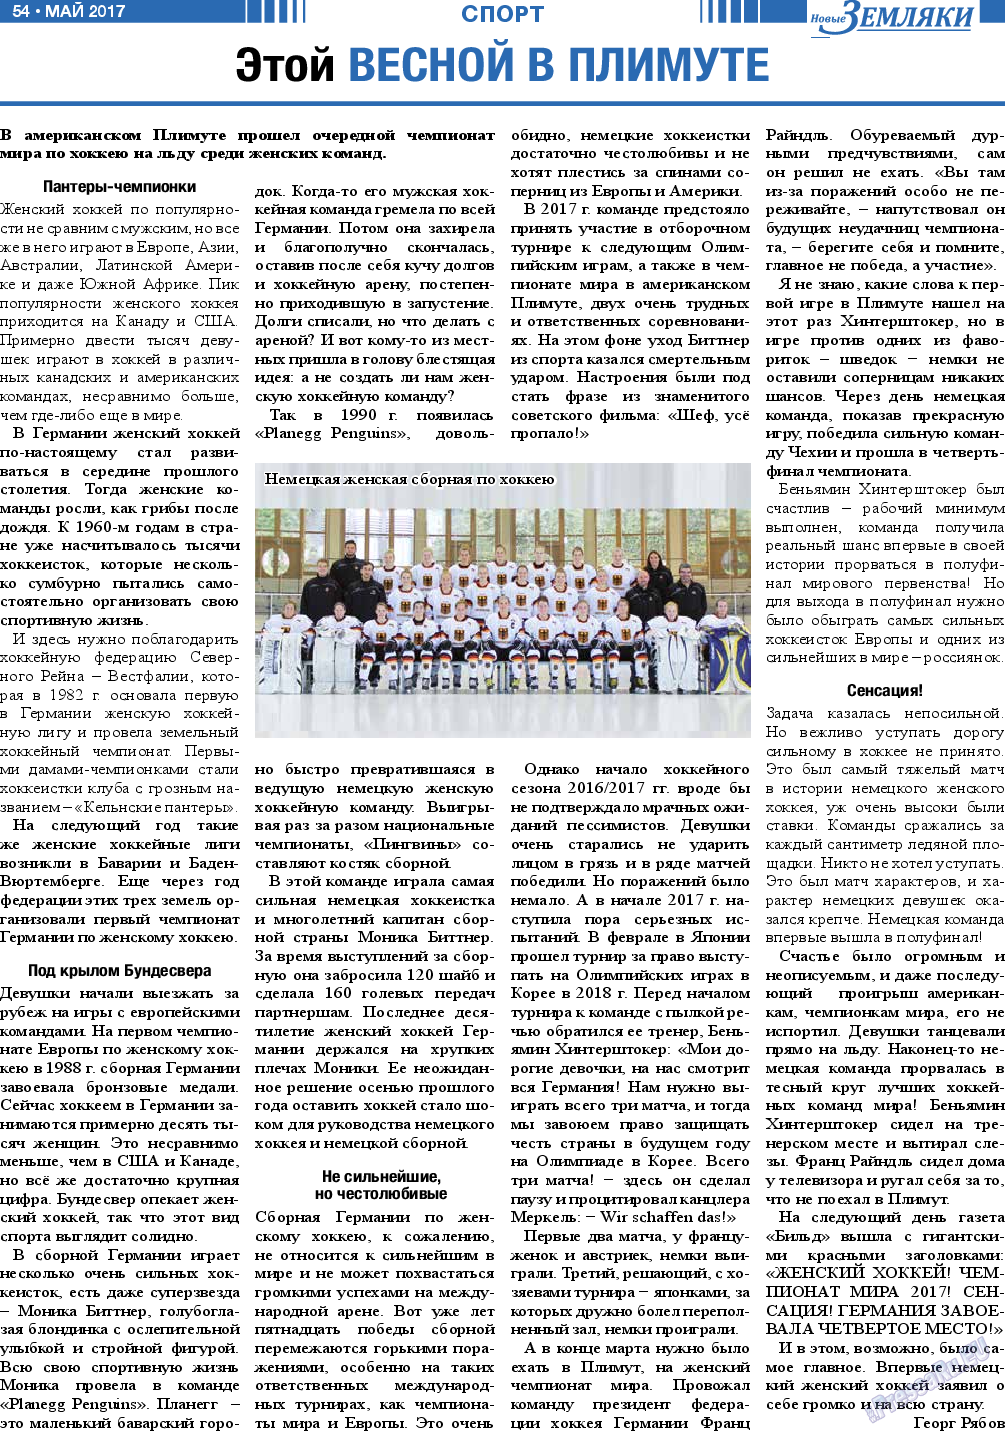 Новые Земляки (газета). 2017 год, номер 5, стр. 54